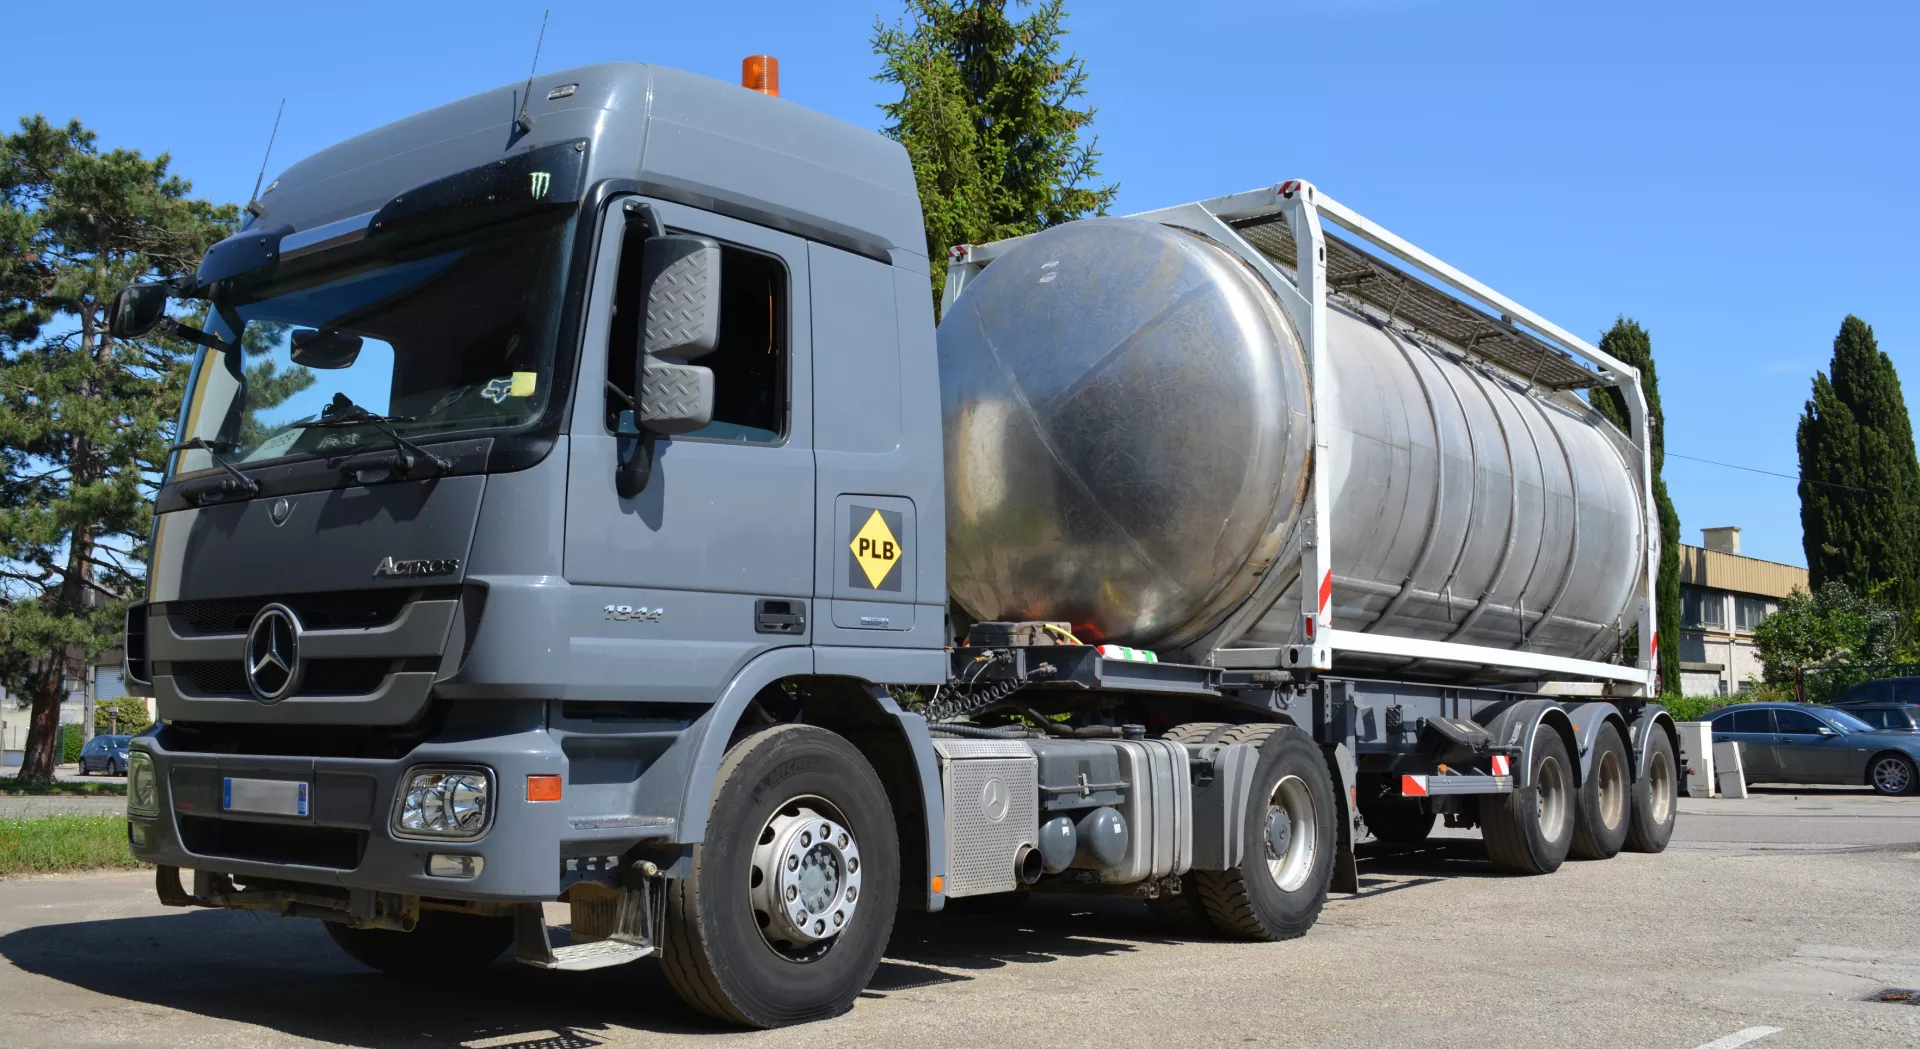 Livraison d’eau par camion-citerne à prix compétitif